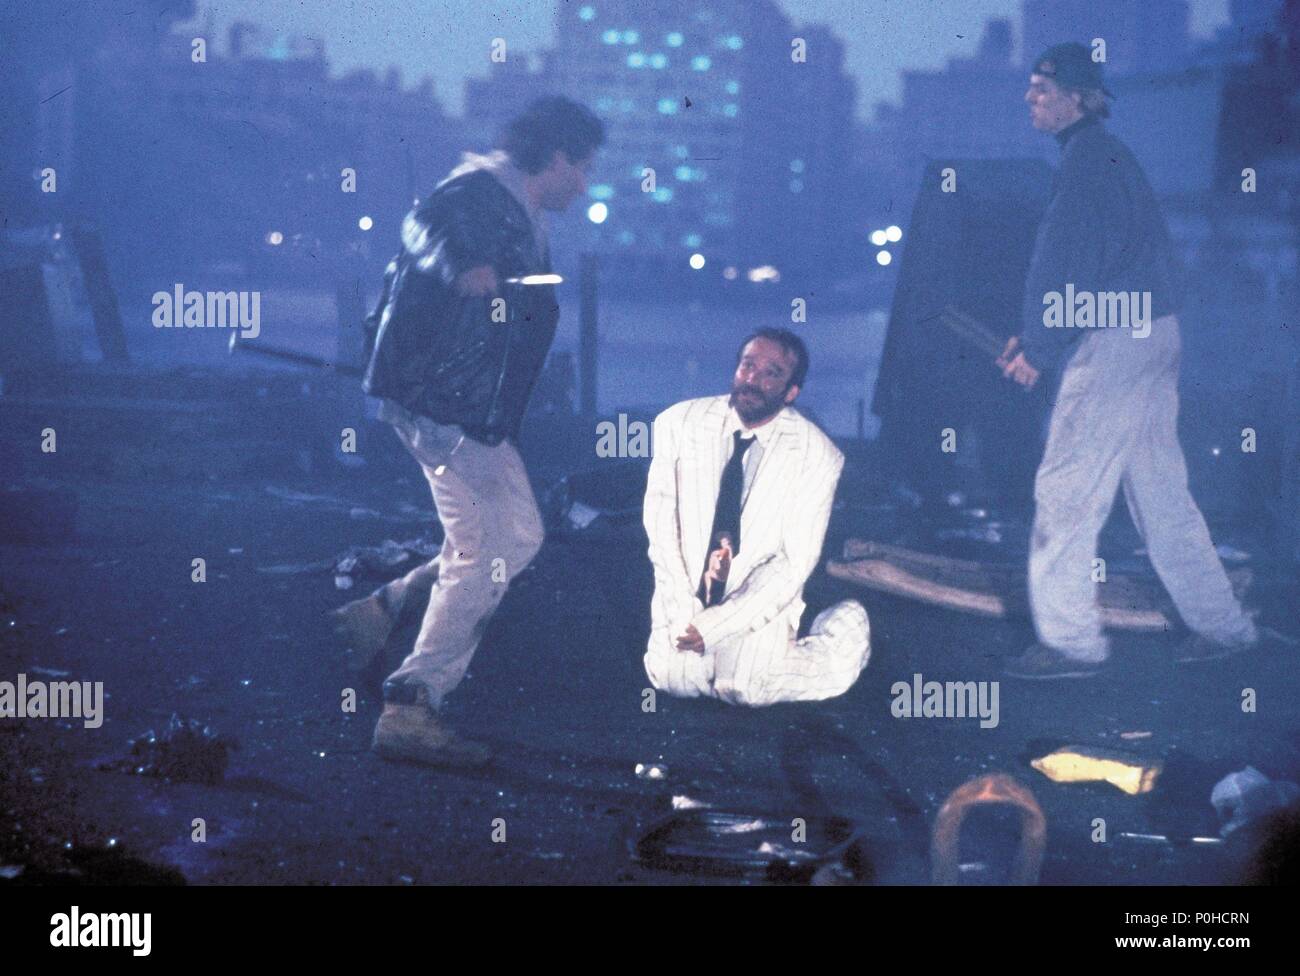 Film Original Titre : Le roi pêcheur. Titre en anglais : Le roi pêcheur. Film Réalisateur : Terry Gilliam. Année : 1991. Stars : ROBIN WILLIAMS. Credit : COLUMBIA TRI STAR / Album Banque D'Images